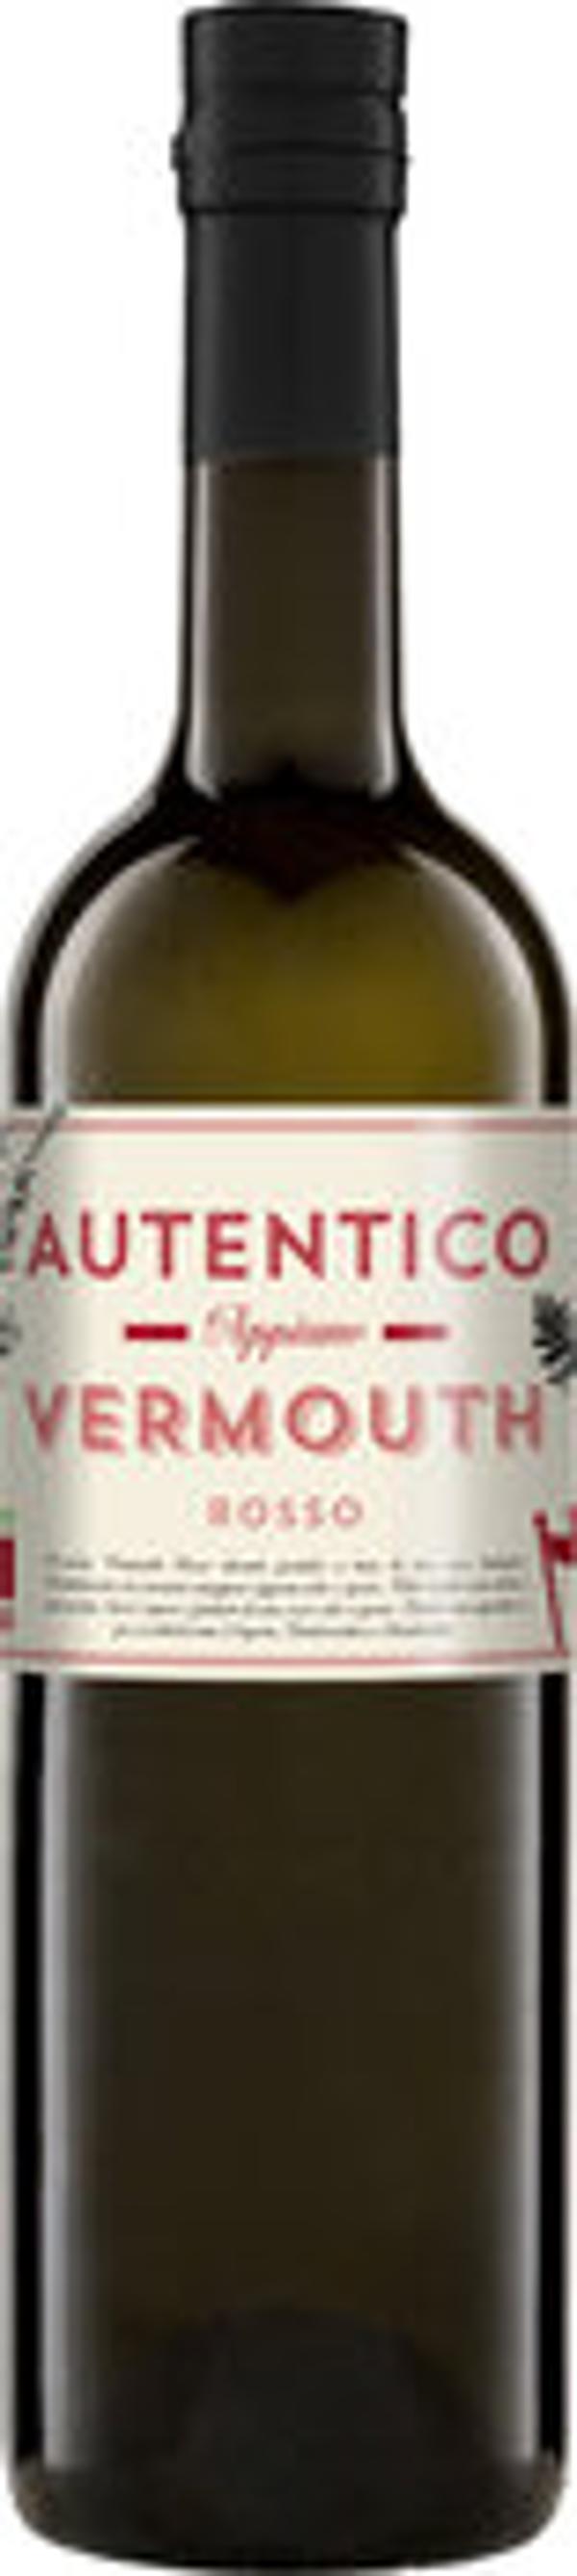 Produktfoto zu Autentico Appiano Bio Vermouth Rosso